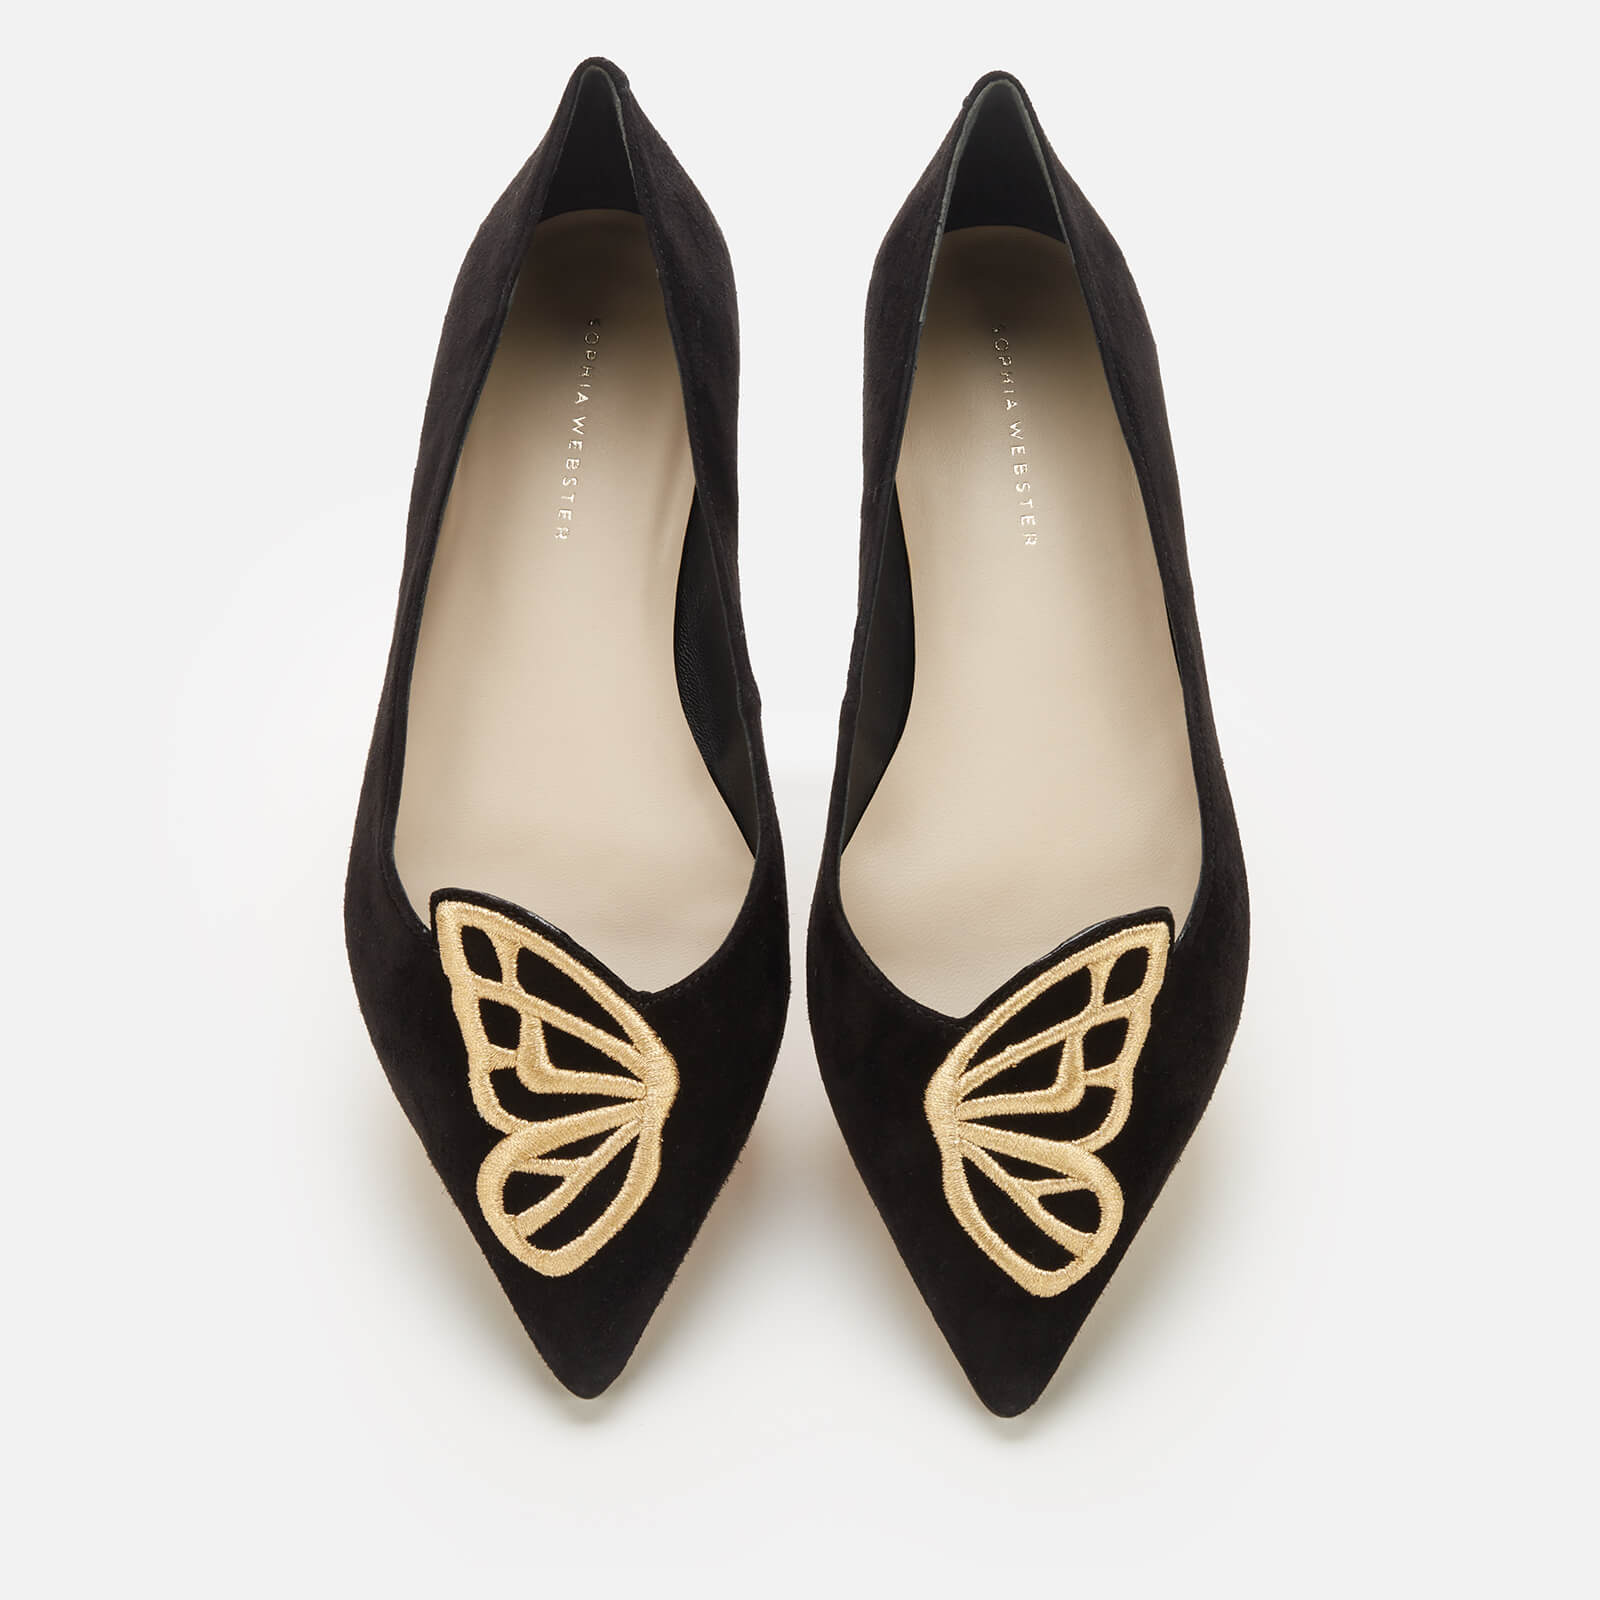 Sophia Webster Women's Butterfly Flats - Black/Gold - UK 3